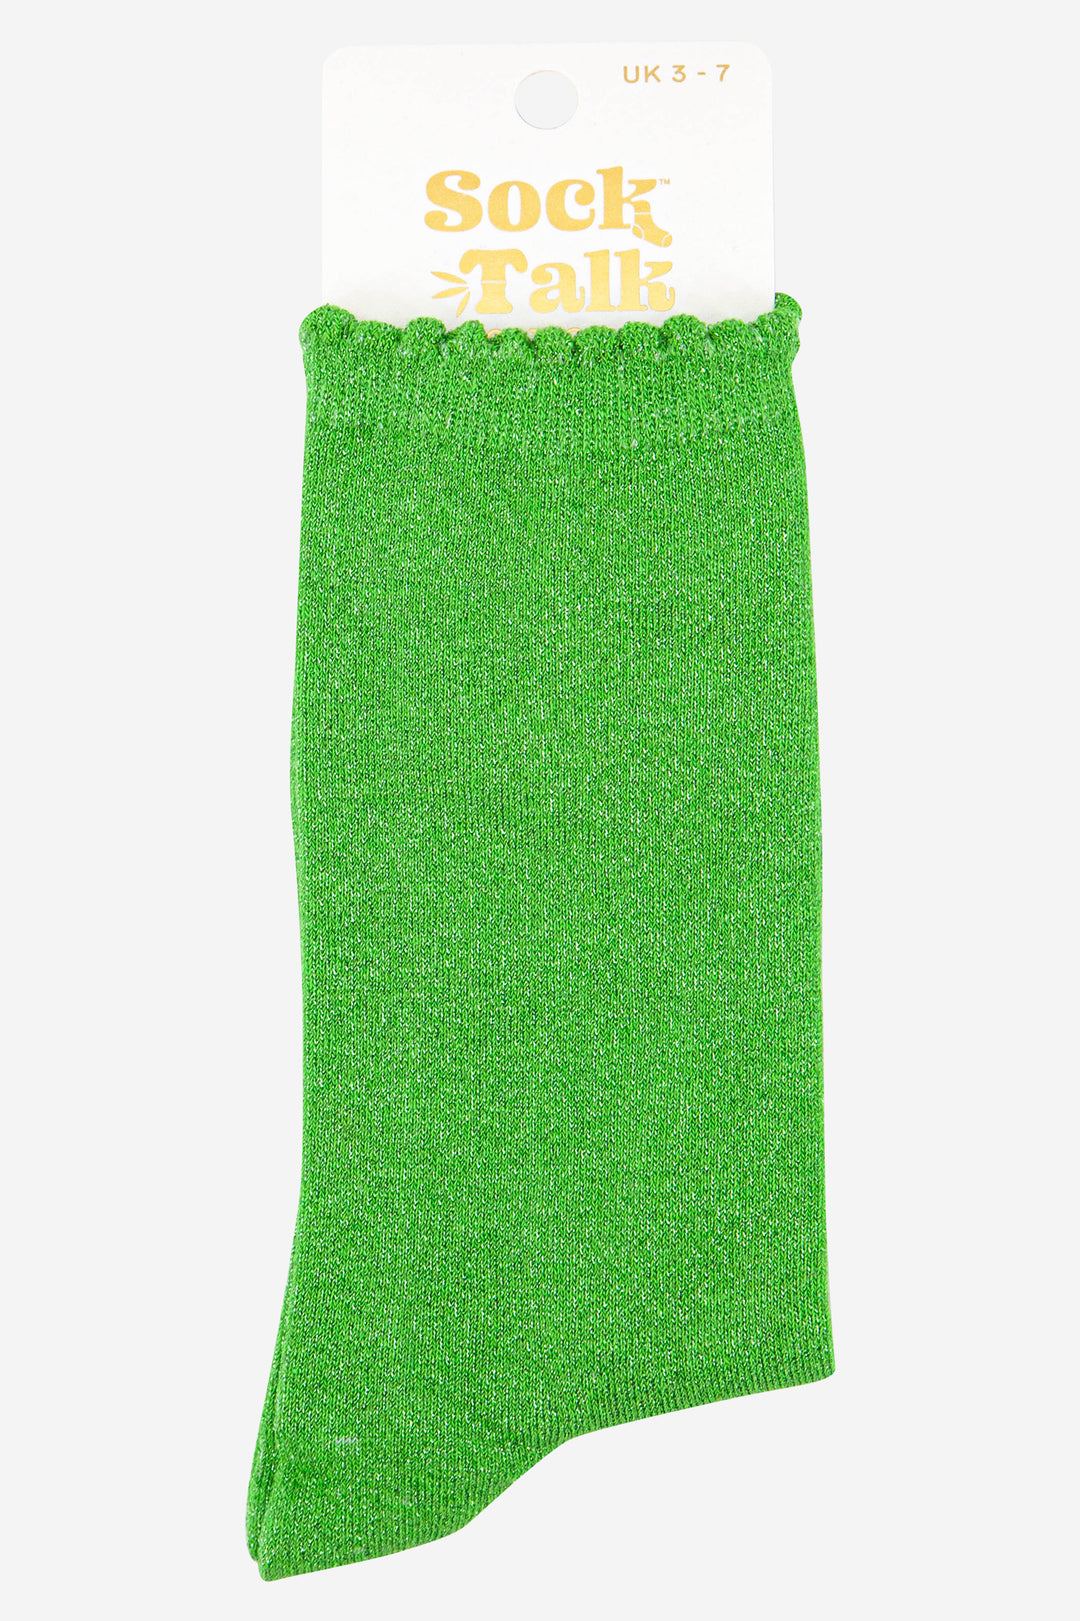 apple green scalloped cuff cotton glitter socks uk size 3-7